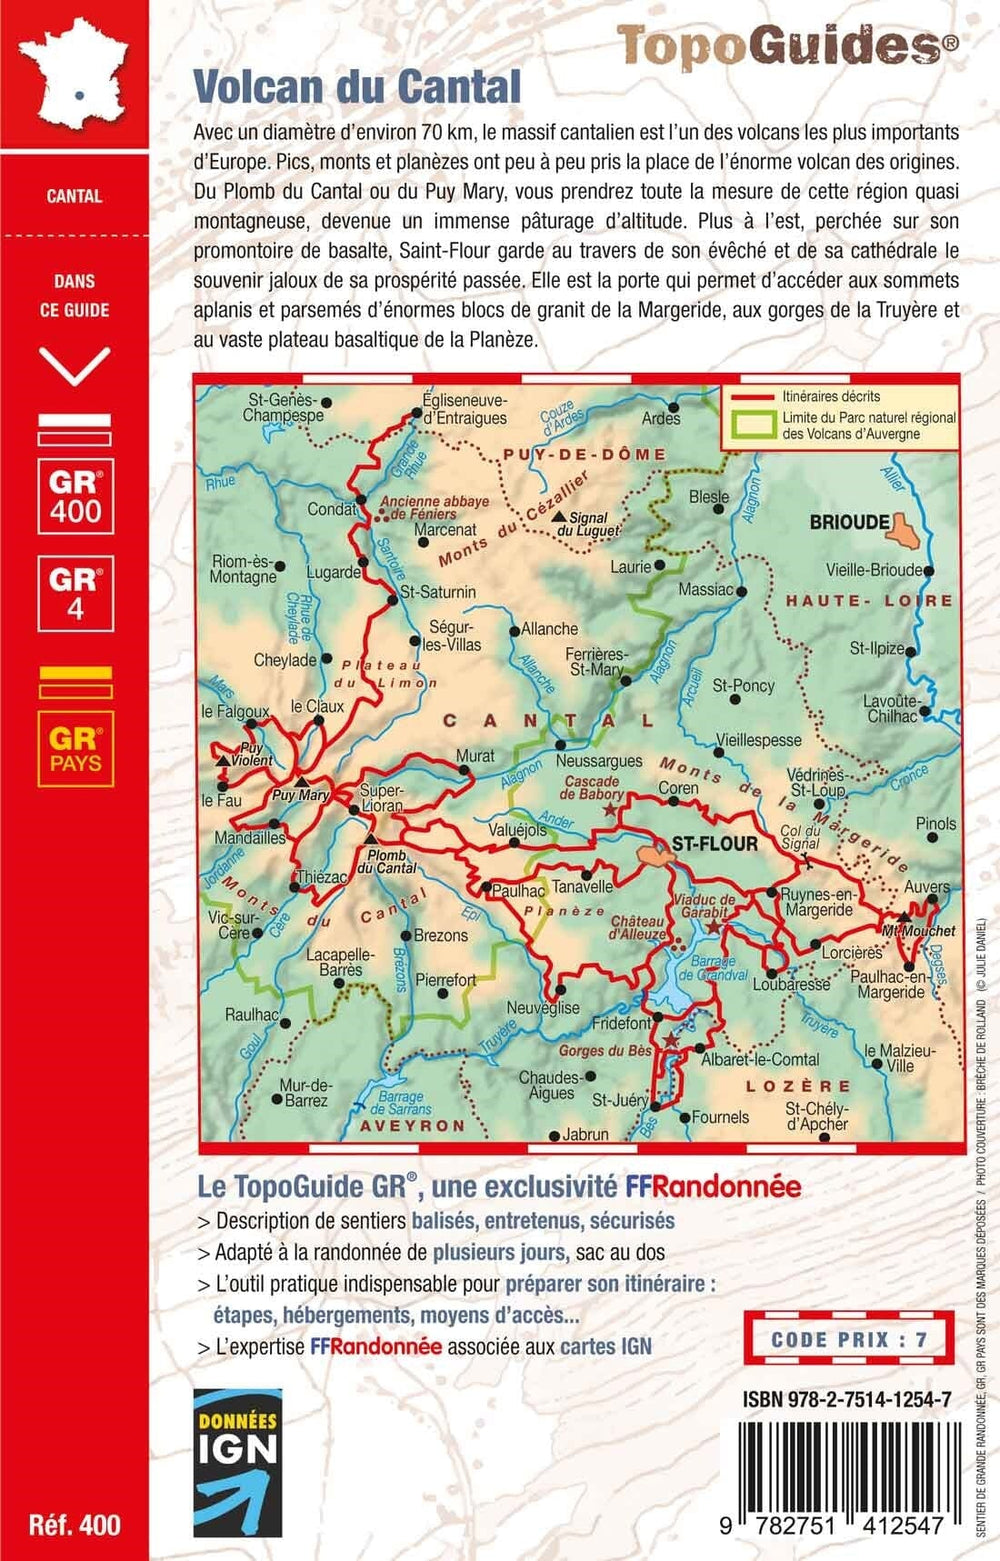 Topoguide de randonnée - Volcan du Cantal et Pays de Saint-Flour - GR4, GR400 | FFR guide de randonnée FFR - Fédération Française de Randonnée 